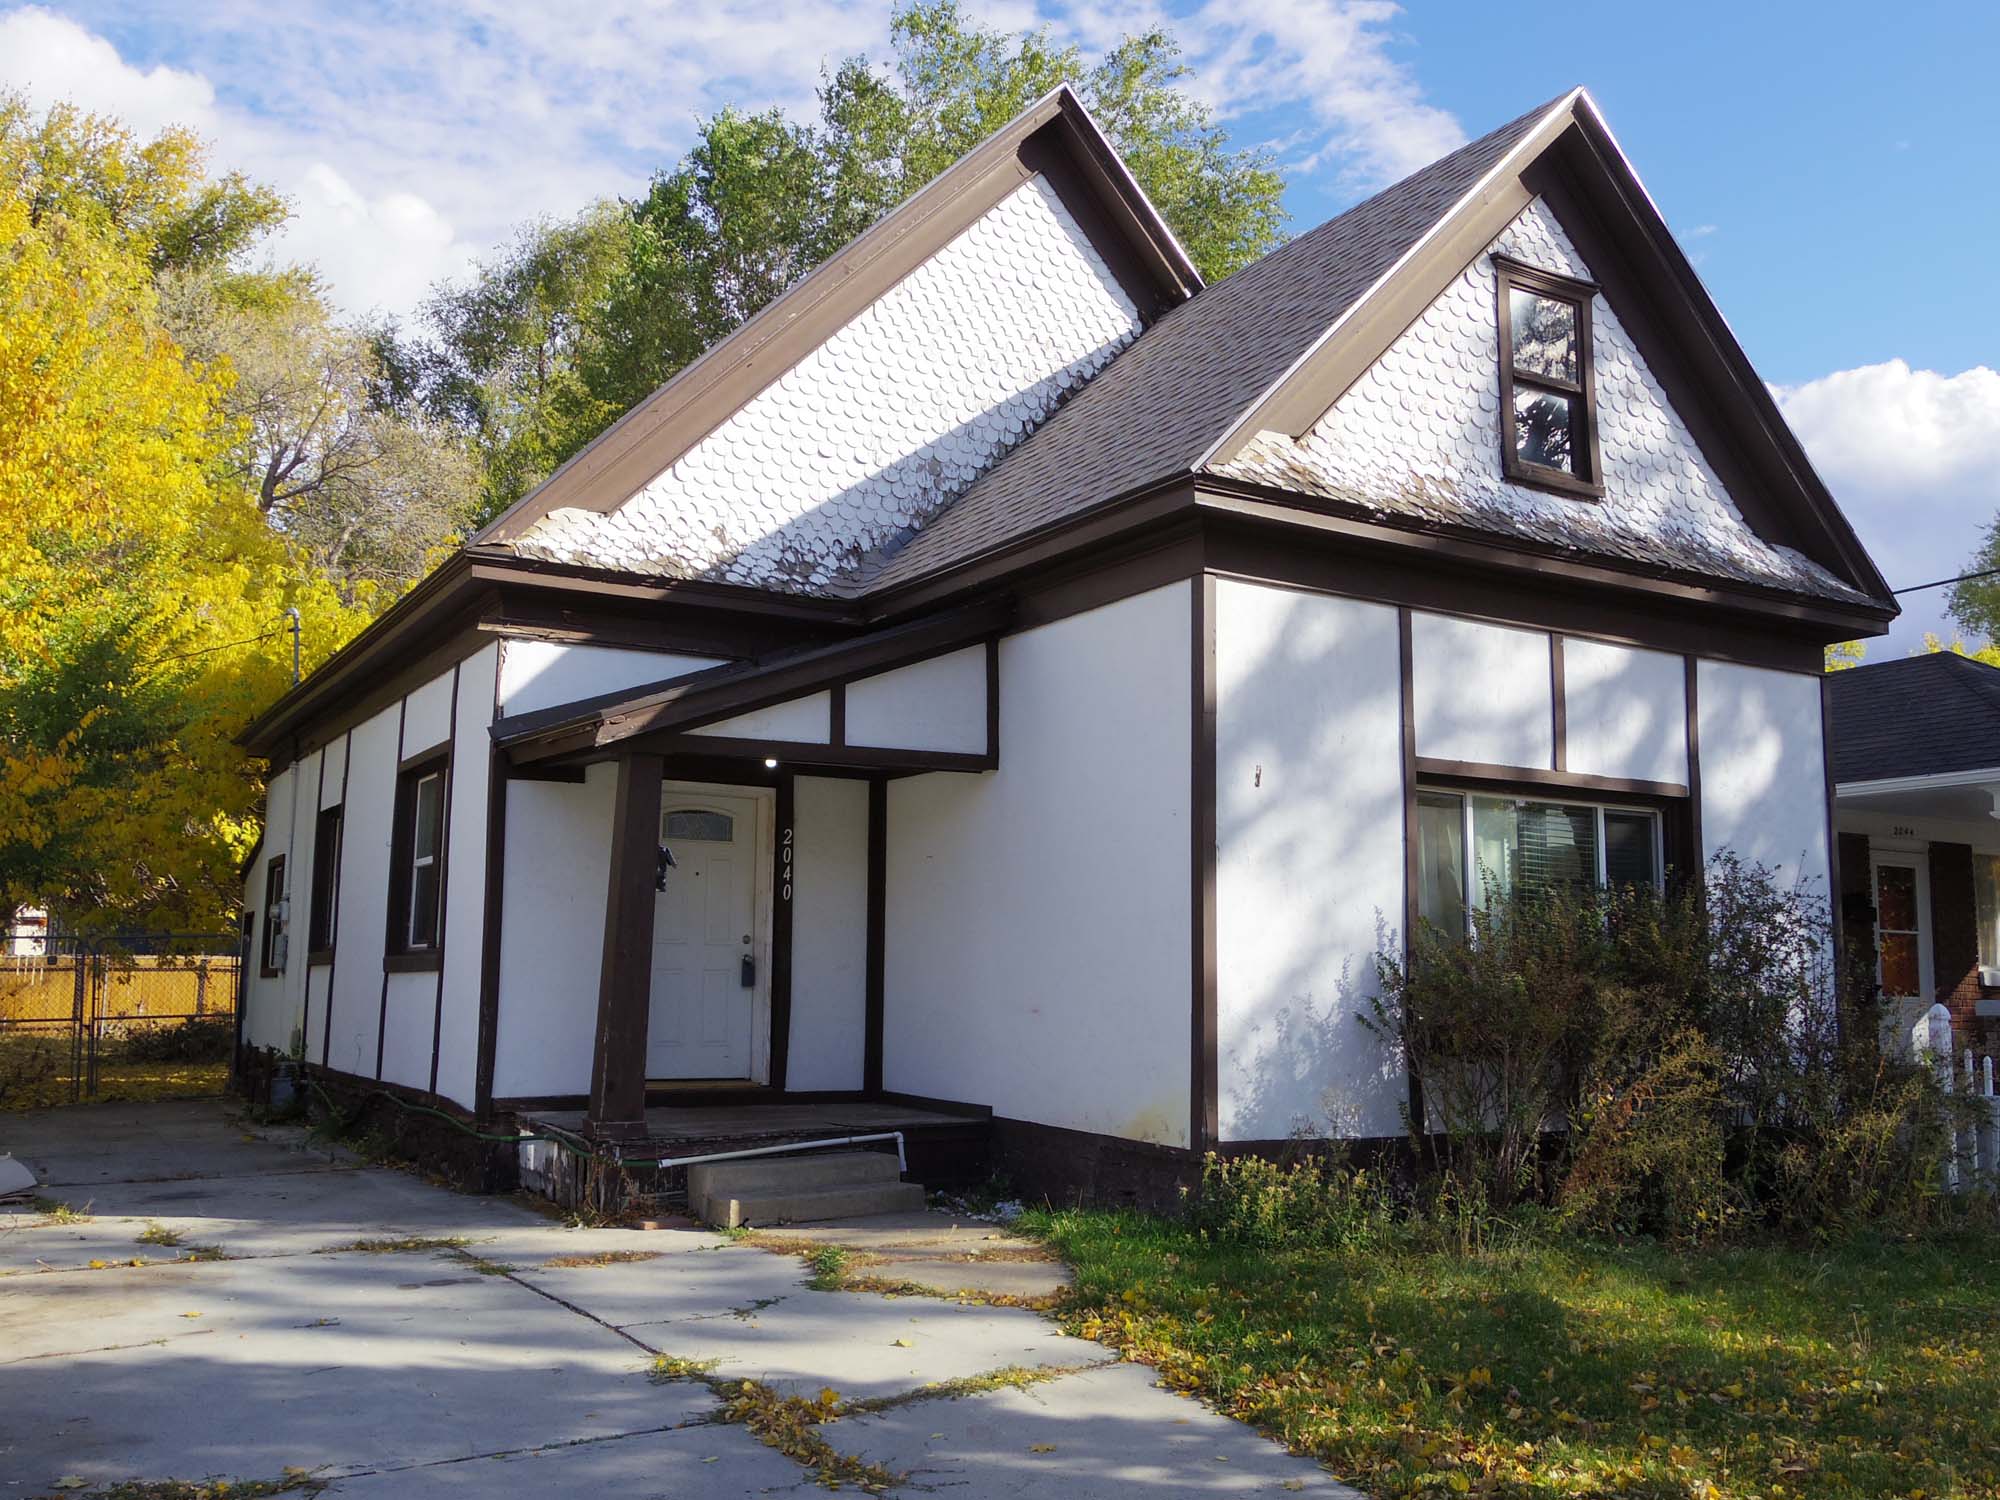 FOR SALE:  Historic Ogden Victorian Cottage